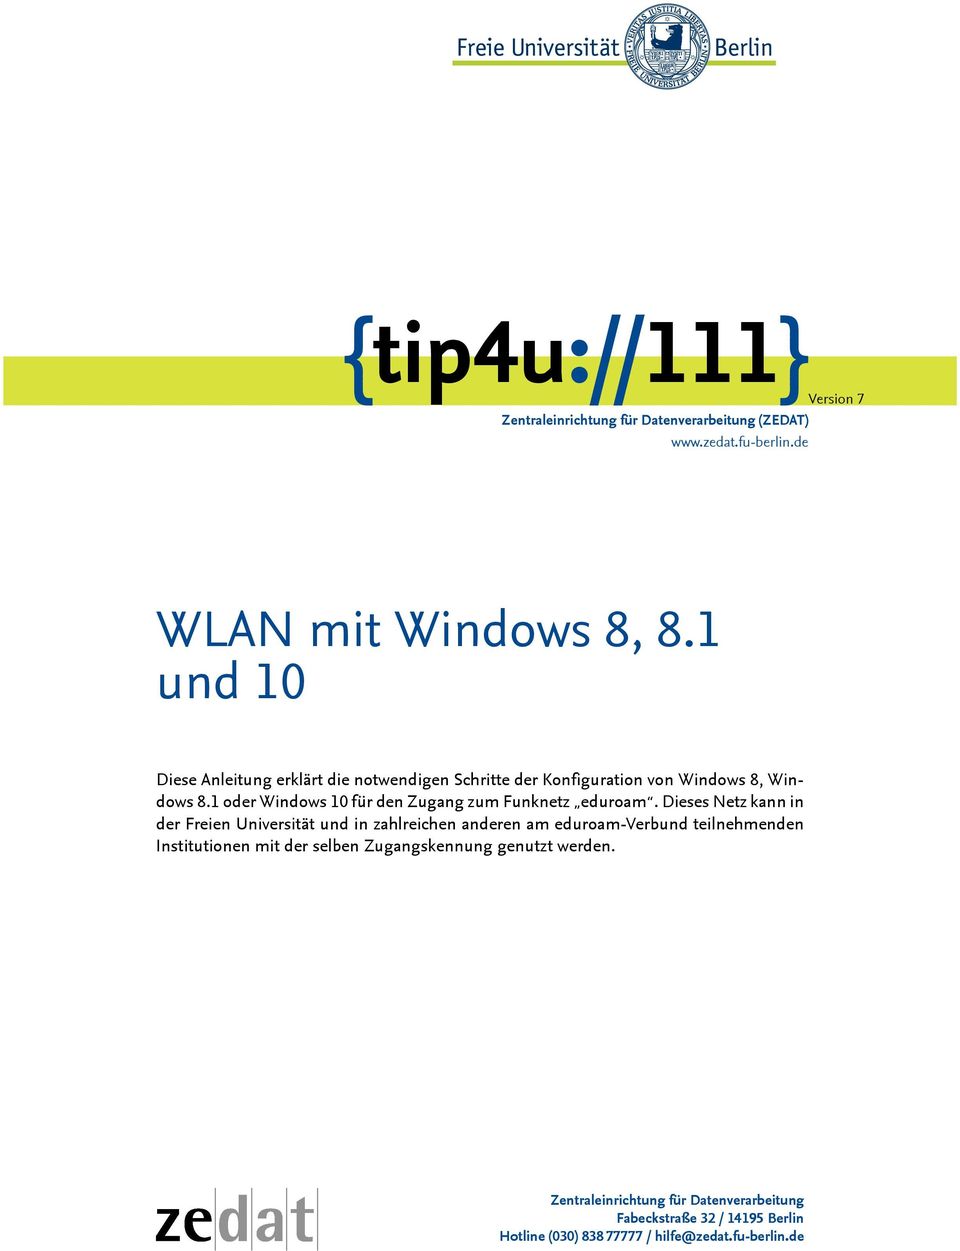 1 oder Windows 10 für den Zugang zum Funknetz eduroam.